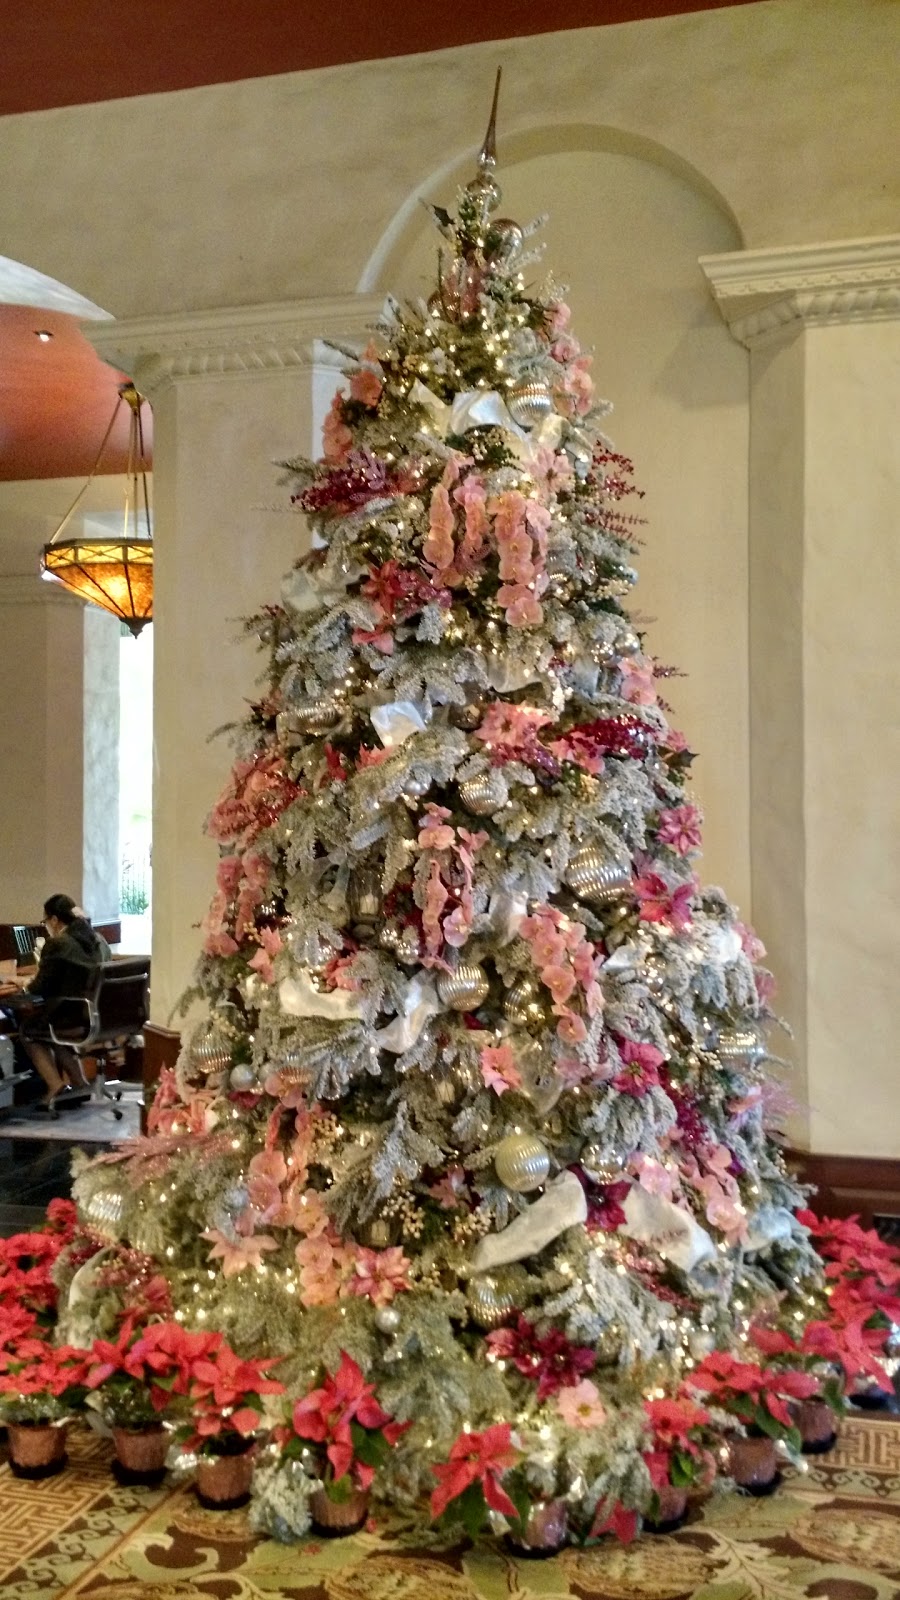 Hale Ku'ai Aloha 96815: Royal Hawaiian Hotel Christmas Tree 2014